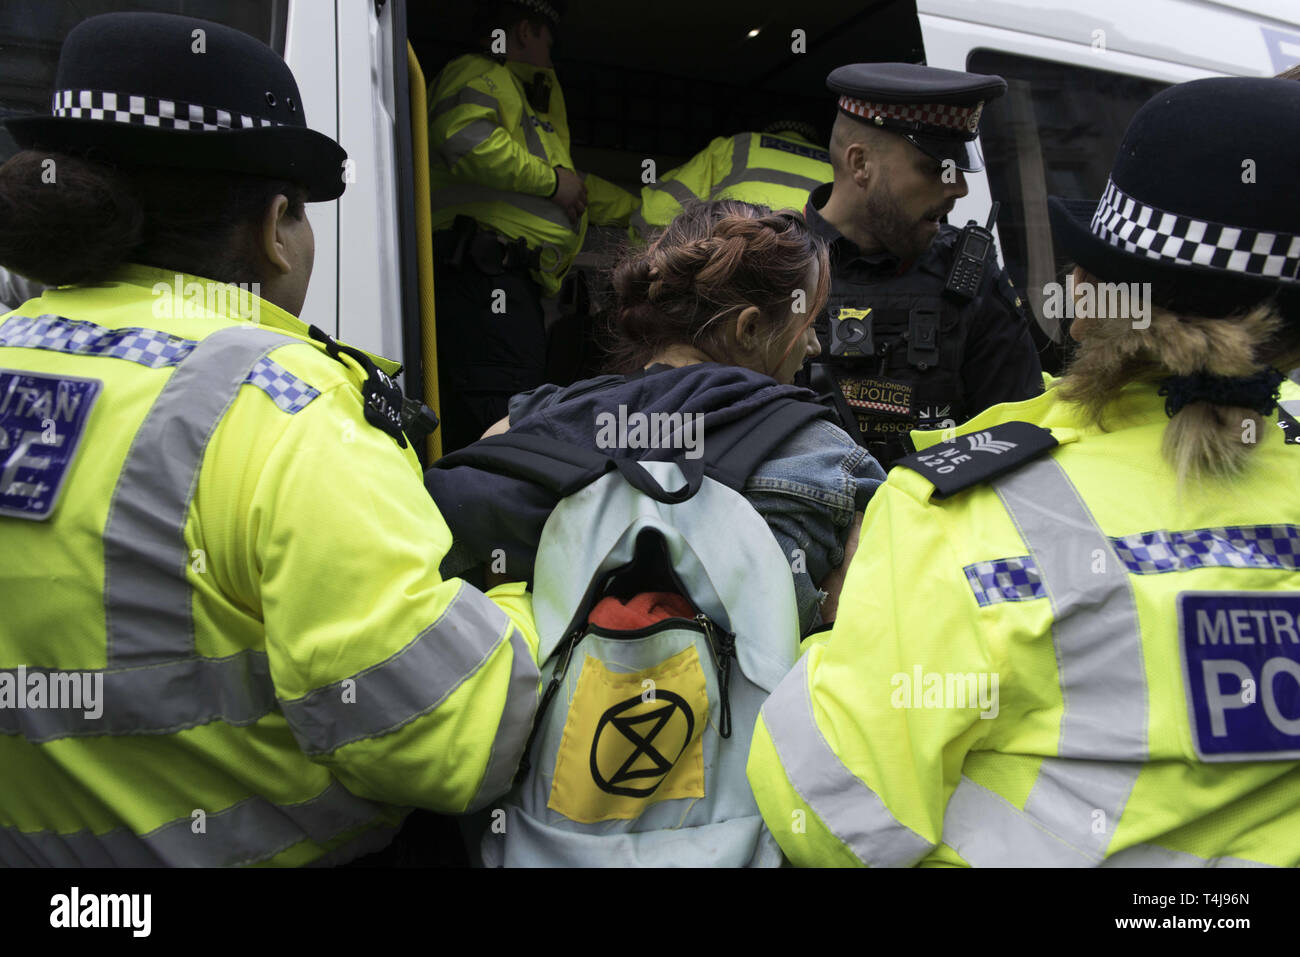 London, Greater London, UK. 17 avr, 2019. Activiste féminine est considérée d'être arrêté par des officiers de police après avoir refusé à la tête jusqu'à Marble Arch au cours de la rébellion de l'extinction en grève à Londres. Les militants de l'Extinction du mouvement de rébellion tenir pour la troisième journée consécutive d'Oxford Circus à Londres. Des militants a été parqué un bateau rose au milieu d'Oxford Circus junction bloquant la rue et entraînant une perturbation, la police a été l'arrestation de manifestants qui refusent de la tête à Marble Arch. Exigences de la rébellion extinction gouvernement actions directes sur le climat, r Banque D'Images